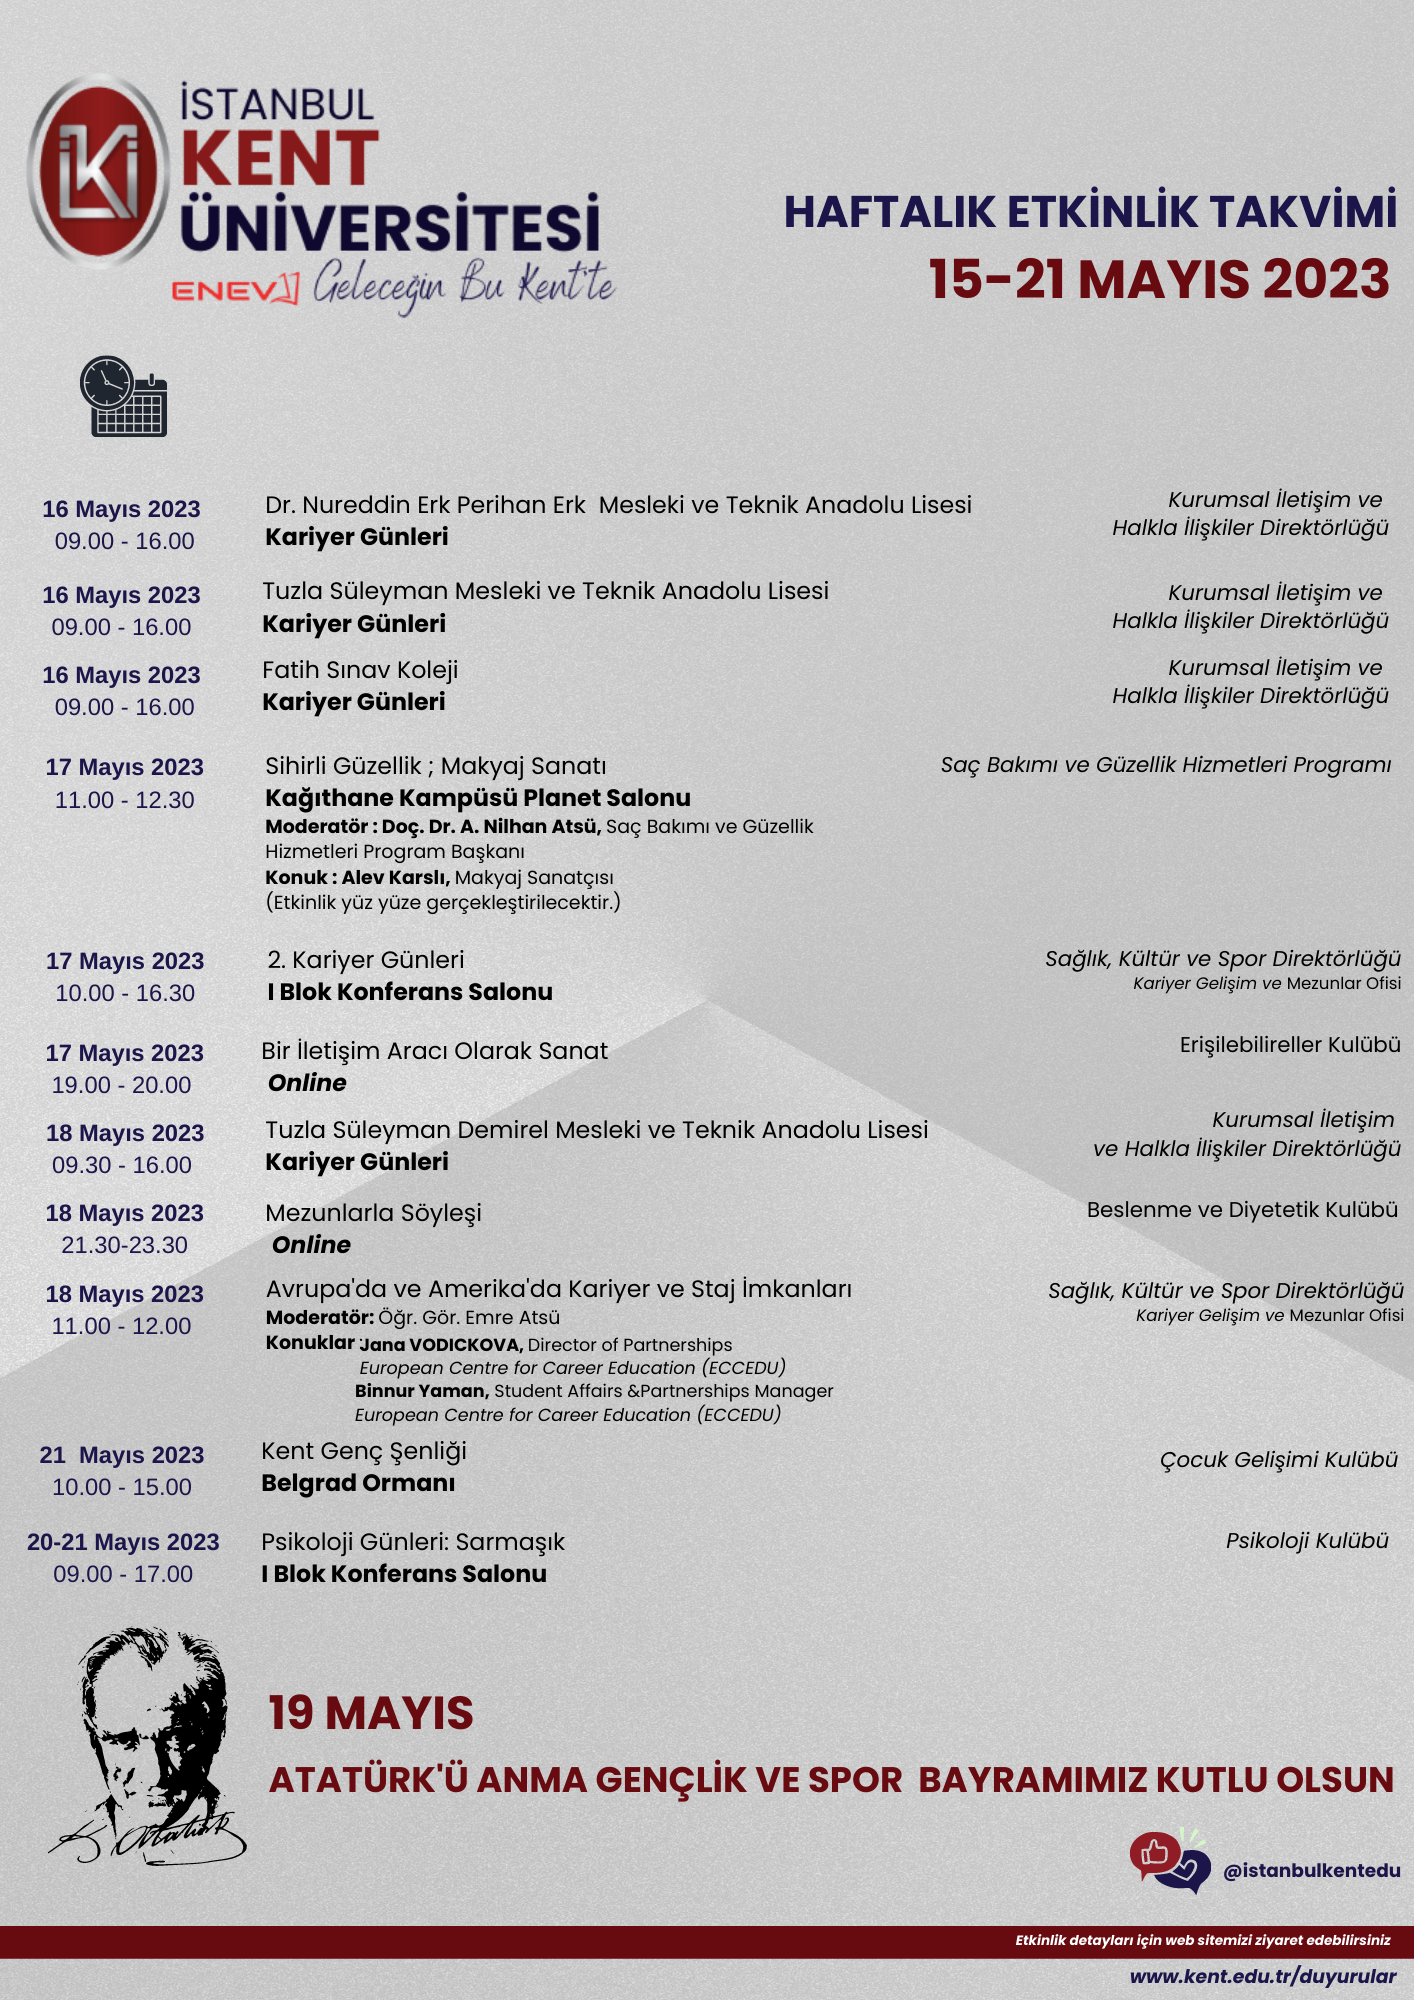 15-21 Mayıs 2023 İstanbul KENT Üniversitesi Haftalık Etkinlikler